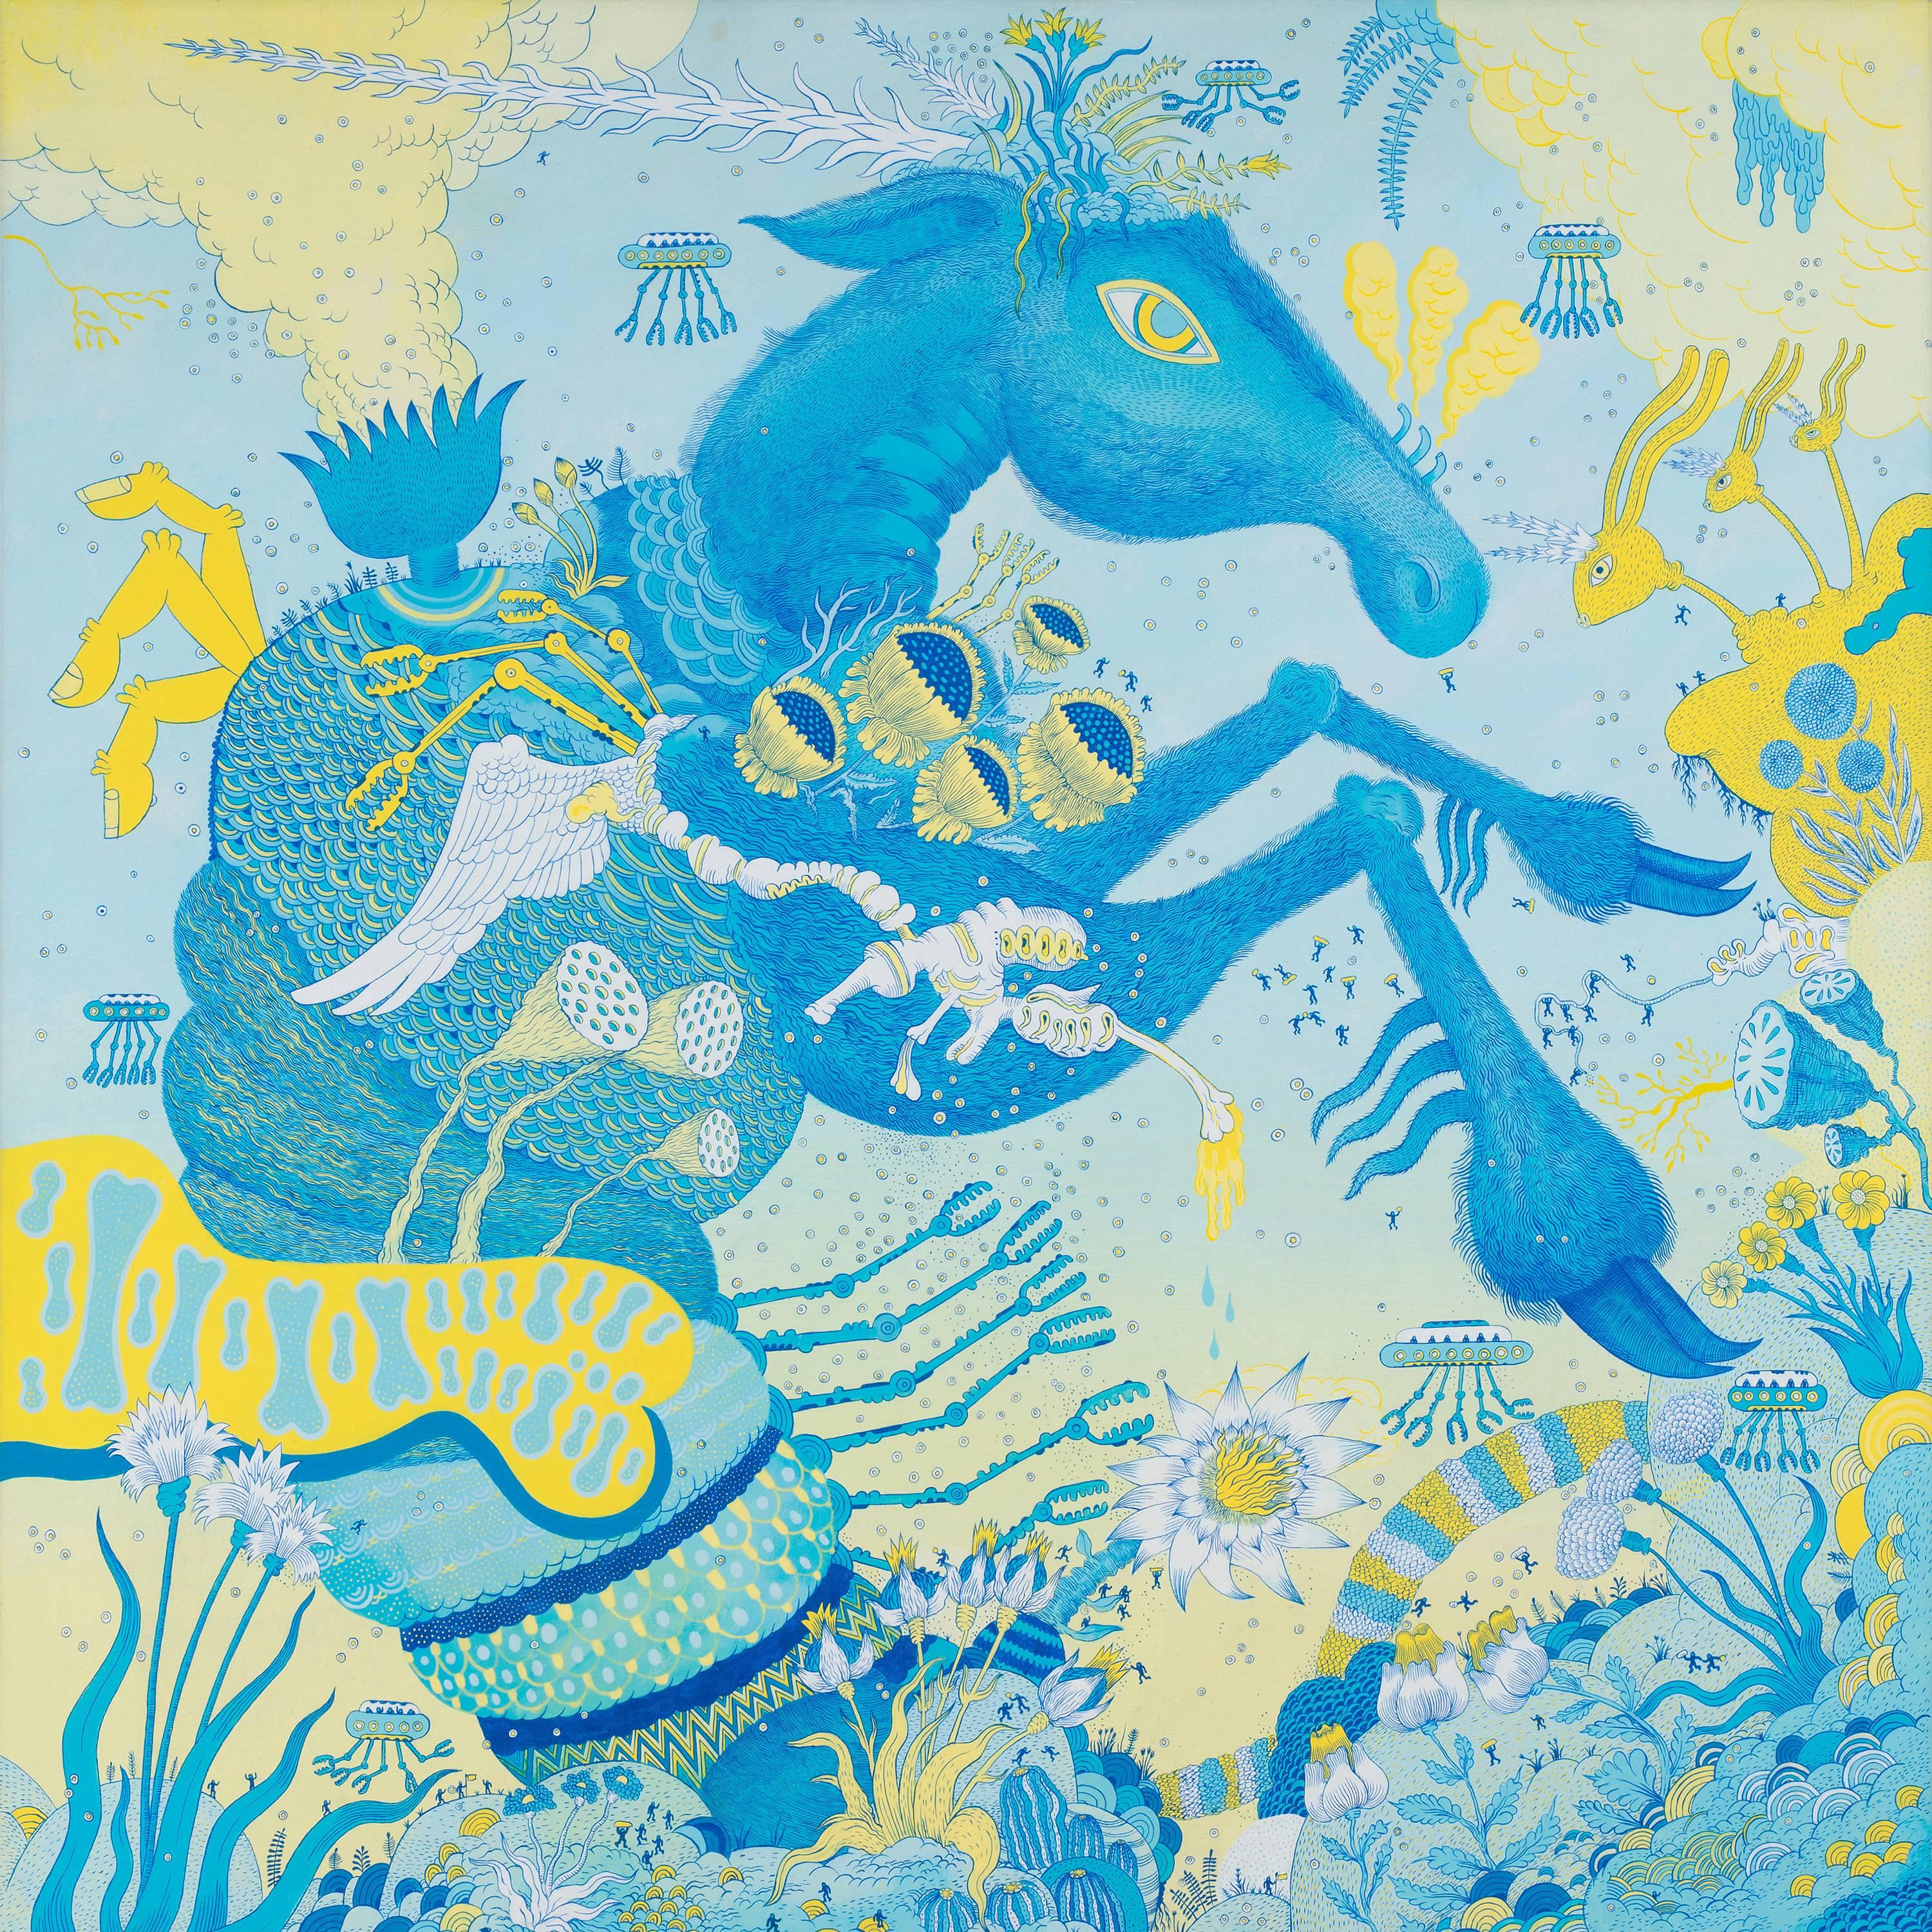 Peter Hamlin Landscape Painting – Blaues Pferdeboot, Pferd, Tier, Roboter, Blau, Grün, Futuristische Fantasie-Landschaft